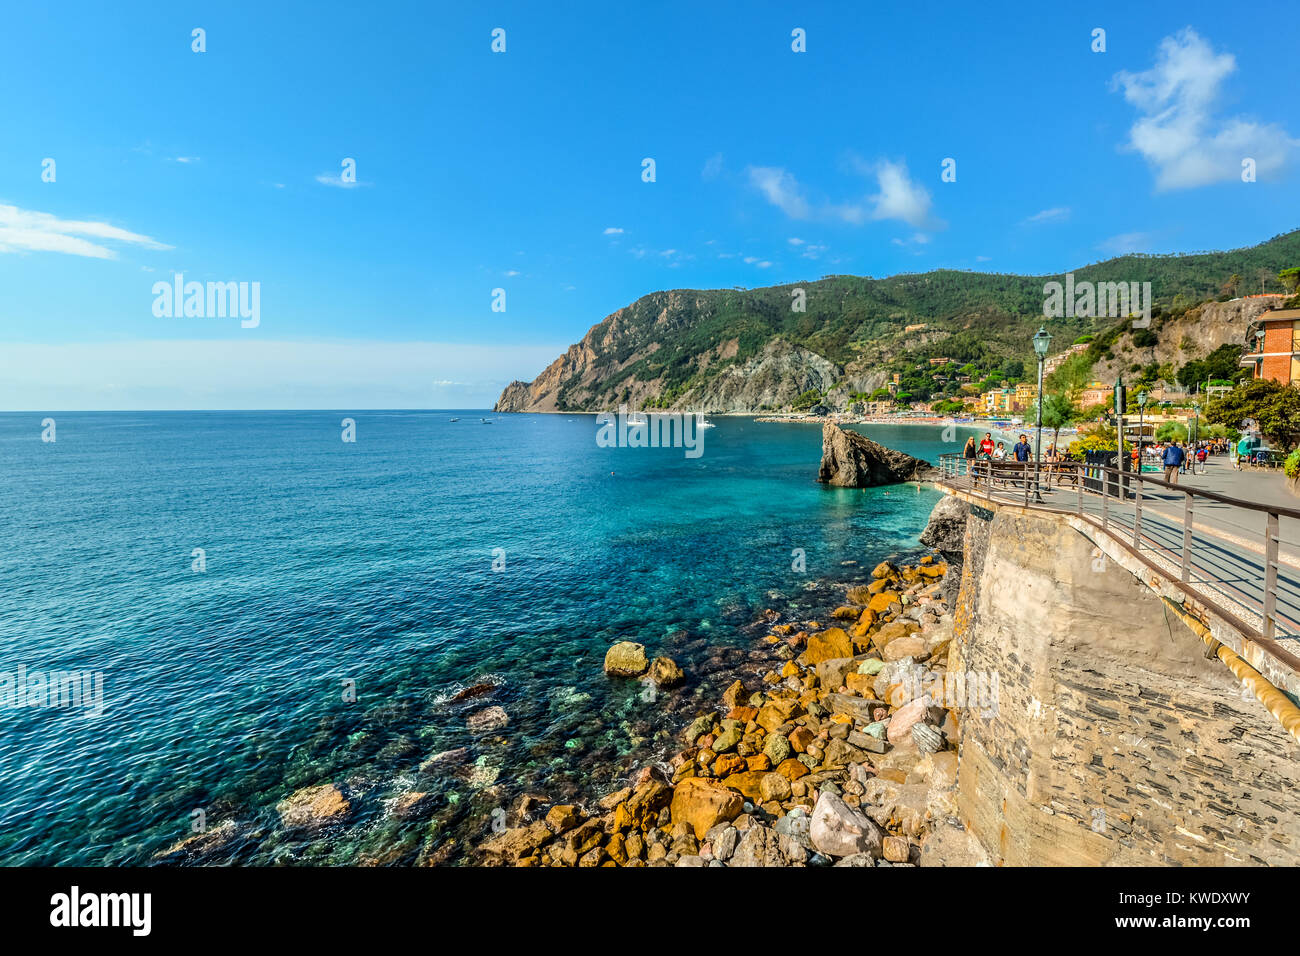 Colorful Ligurian sea at the coast of Spiaggia di Fegina, the beach at Monterosso al Mare in Cinque Terre Italy Stock Photo